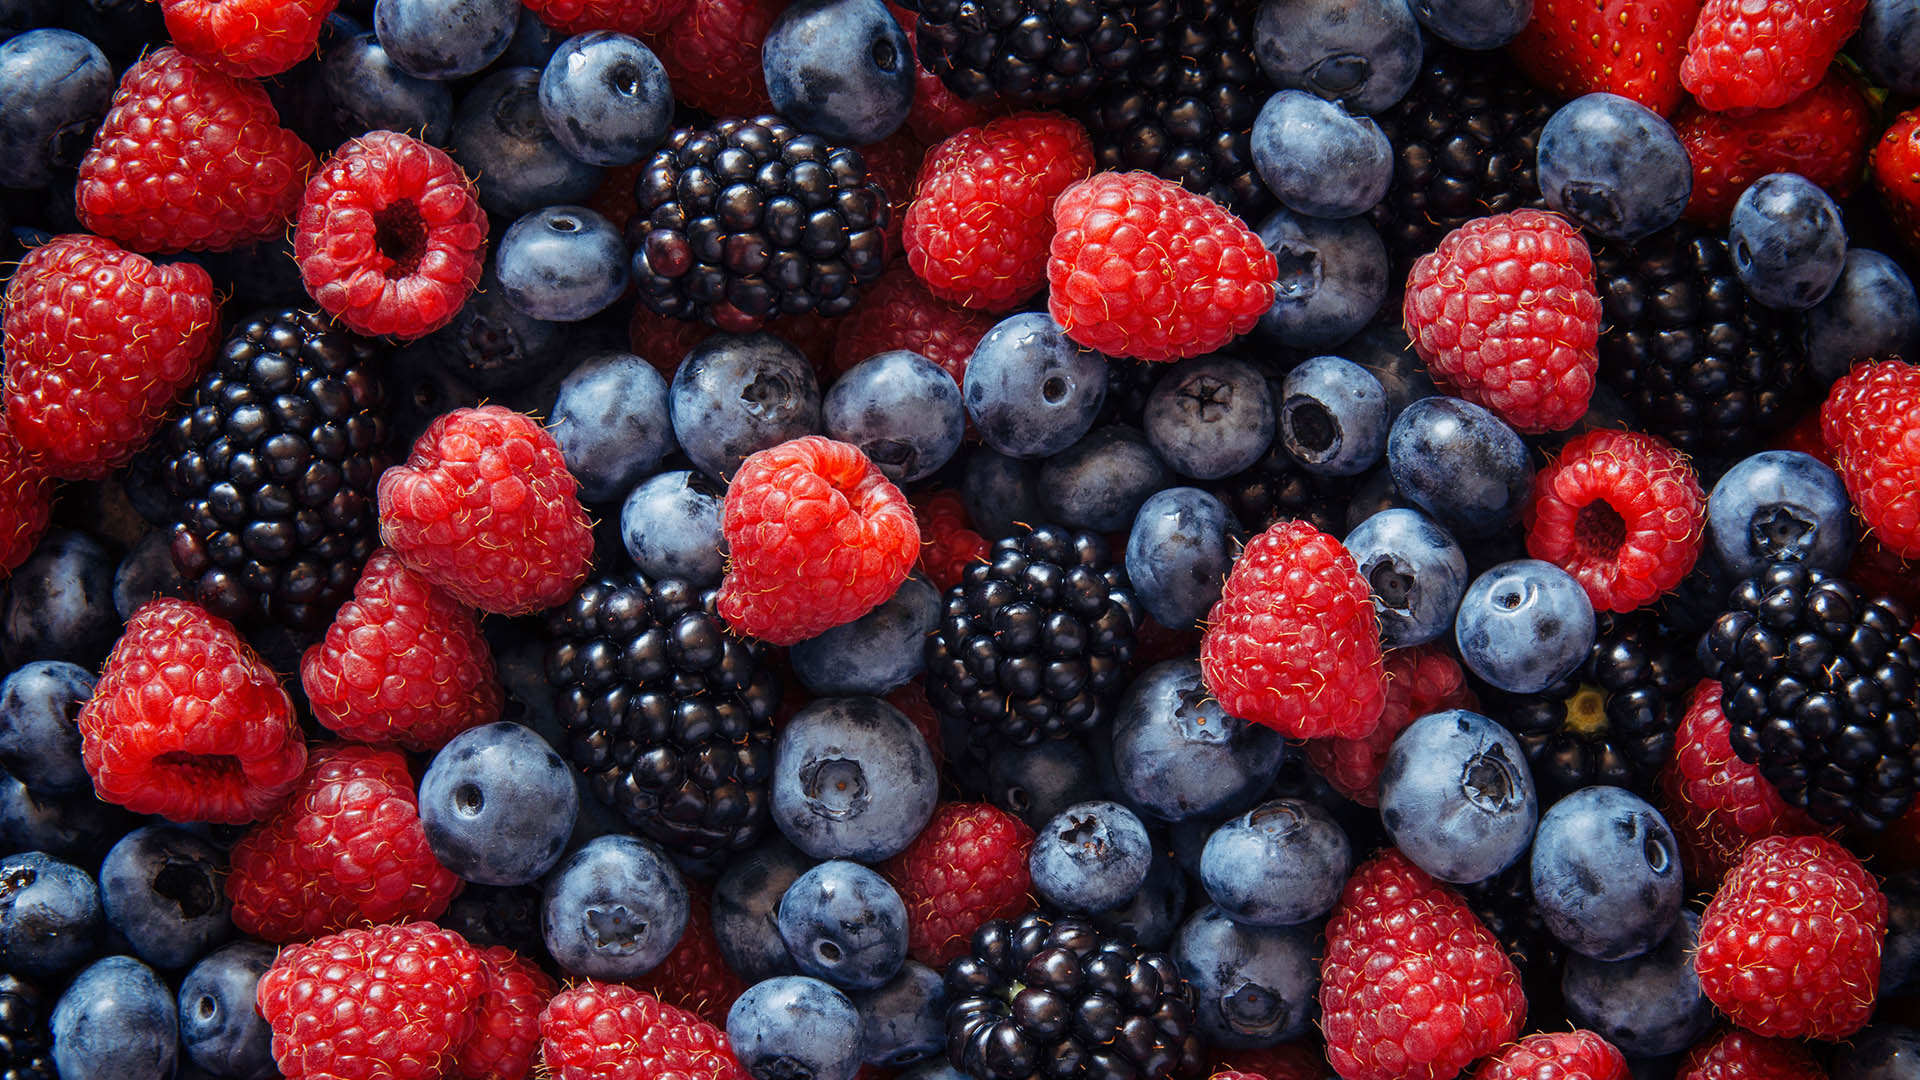 Mirtilli, more, lamponi e ii frutti di bosco in genre contengono flavonoidi importantissimi per la nostra salute. Quelle stesse sostanze che ne donano il colore e sapore caratteristici 